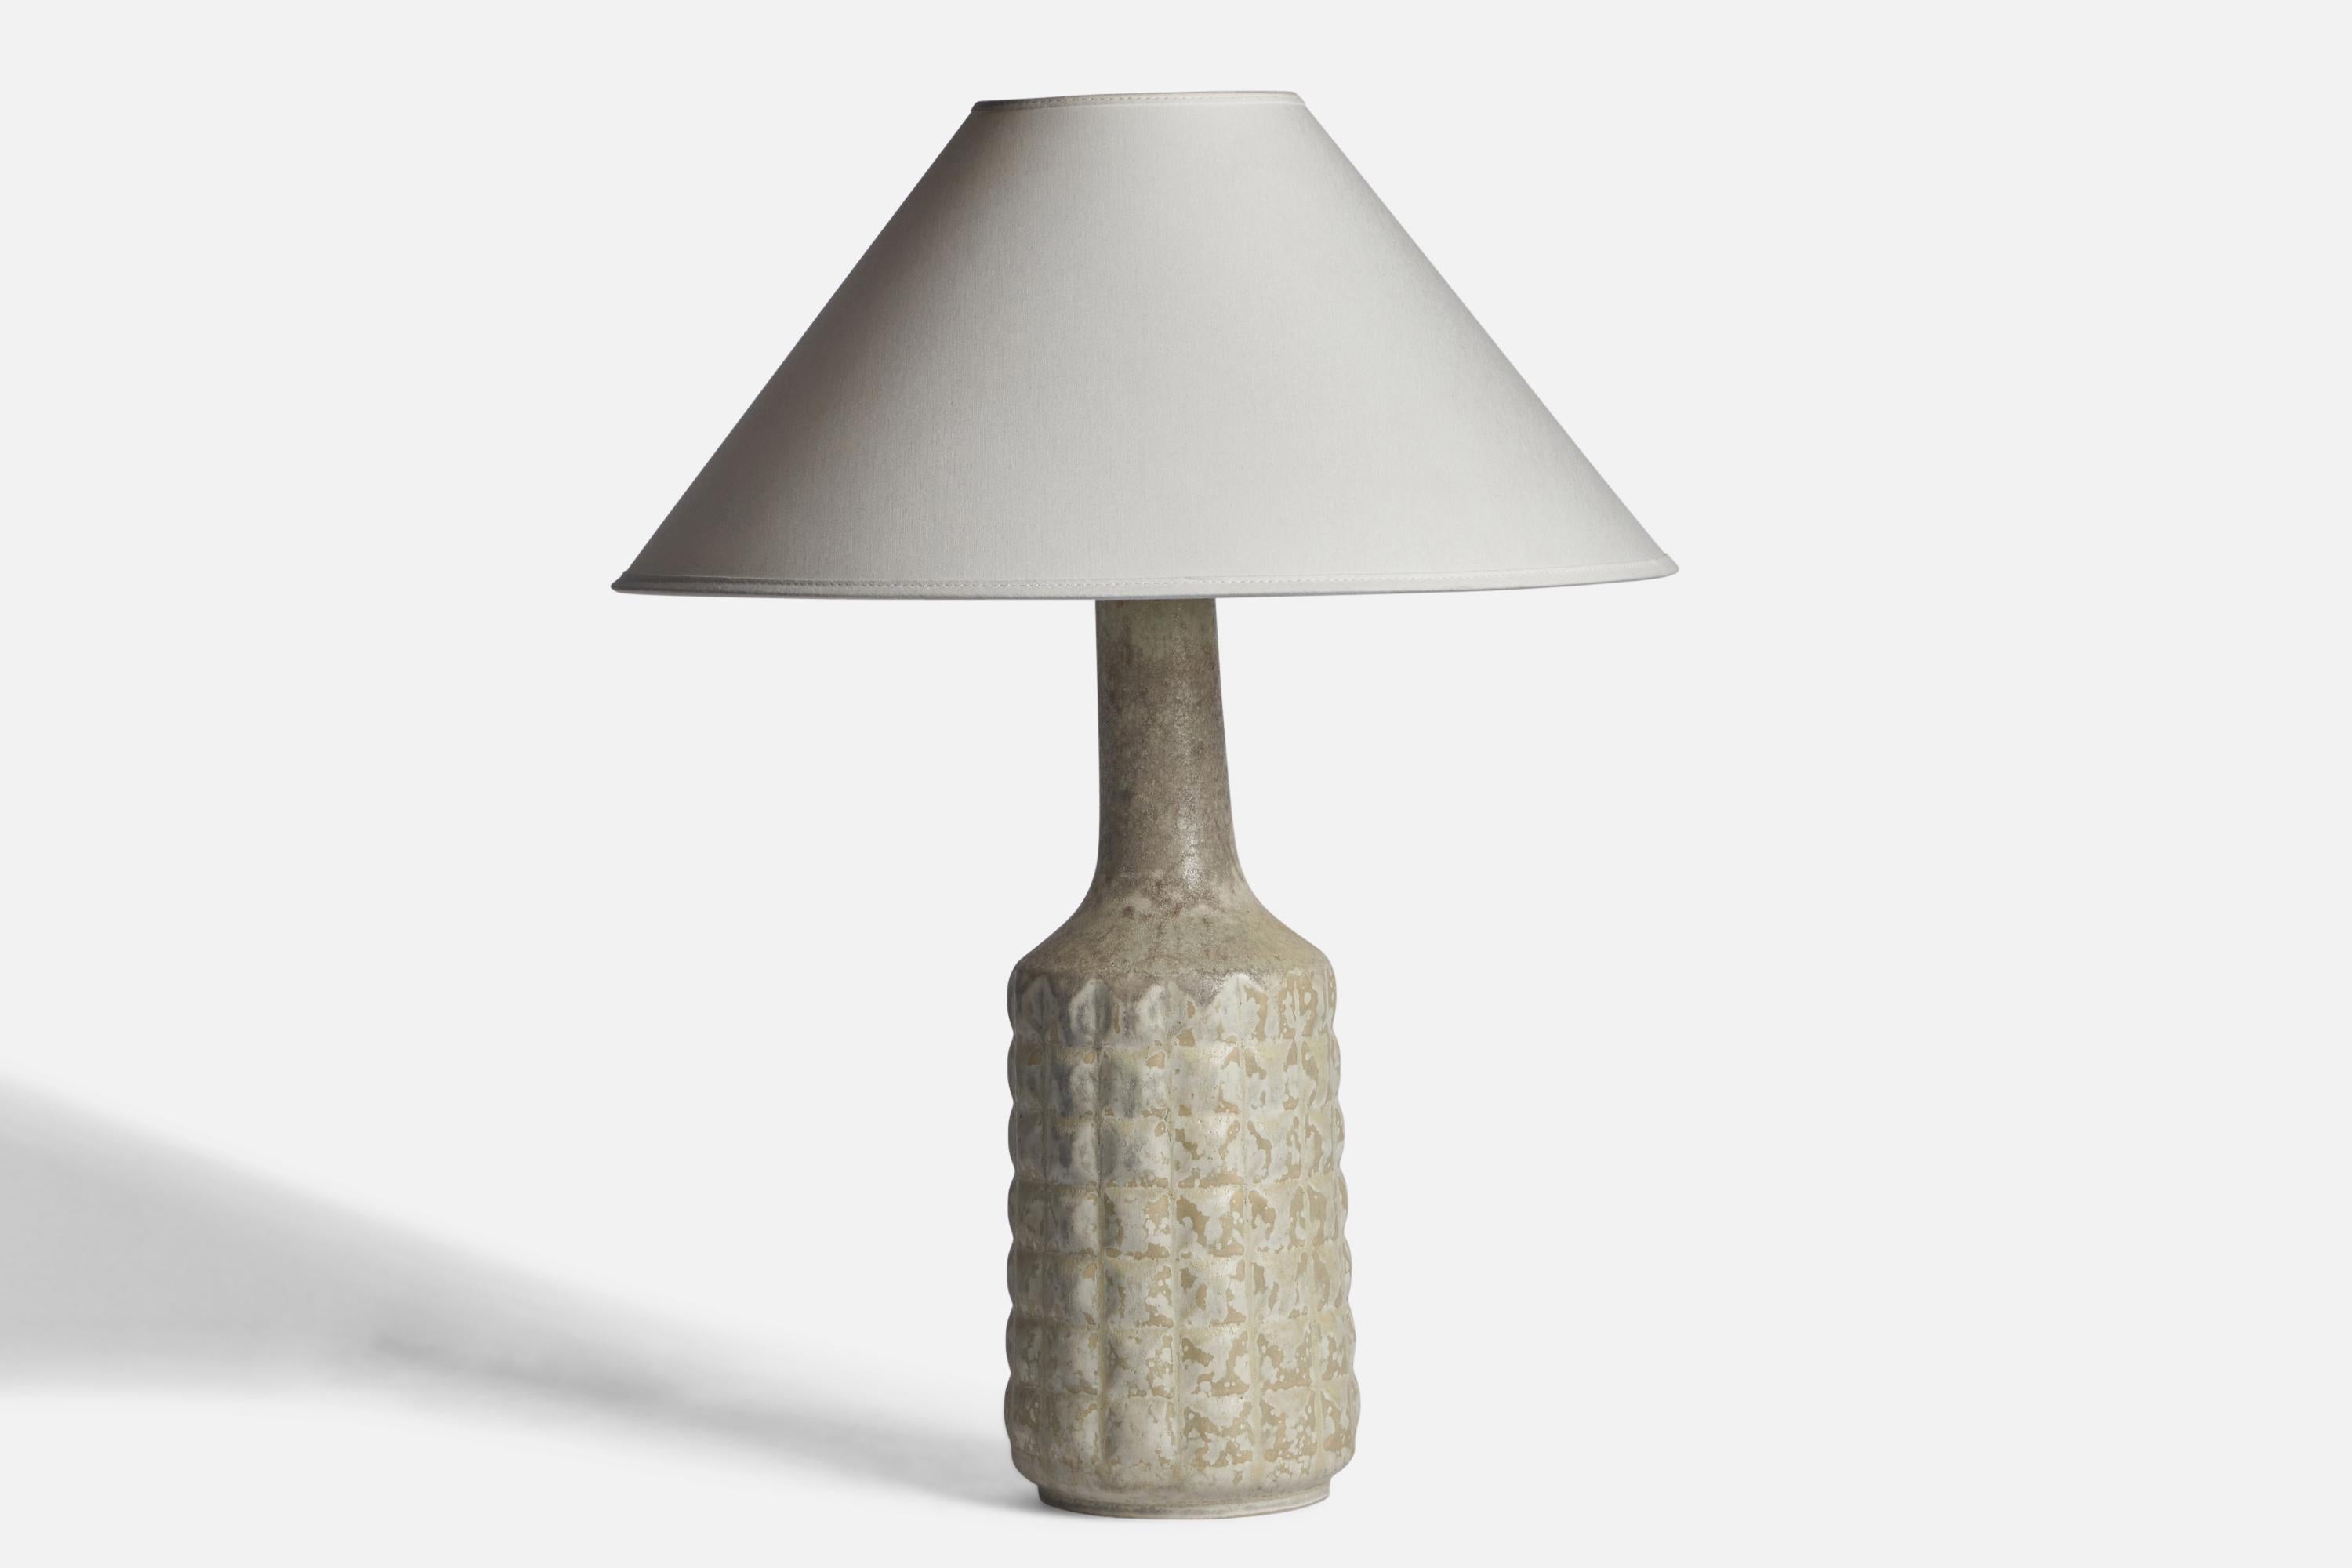 Tischlampe aus hellgrau glasiertem Steingut, entworfen und hergestellt von Desiree, Dänemark, um 1960.

Abmessungen der Lampe (Zoll): 16,75 H x 5,25